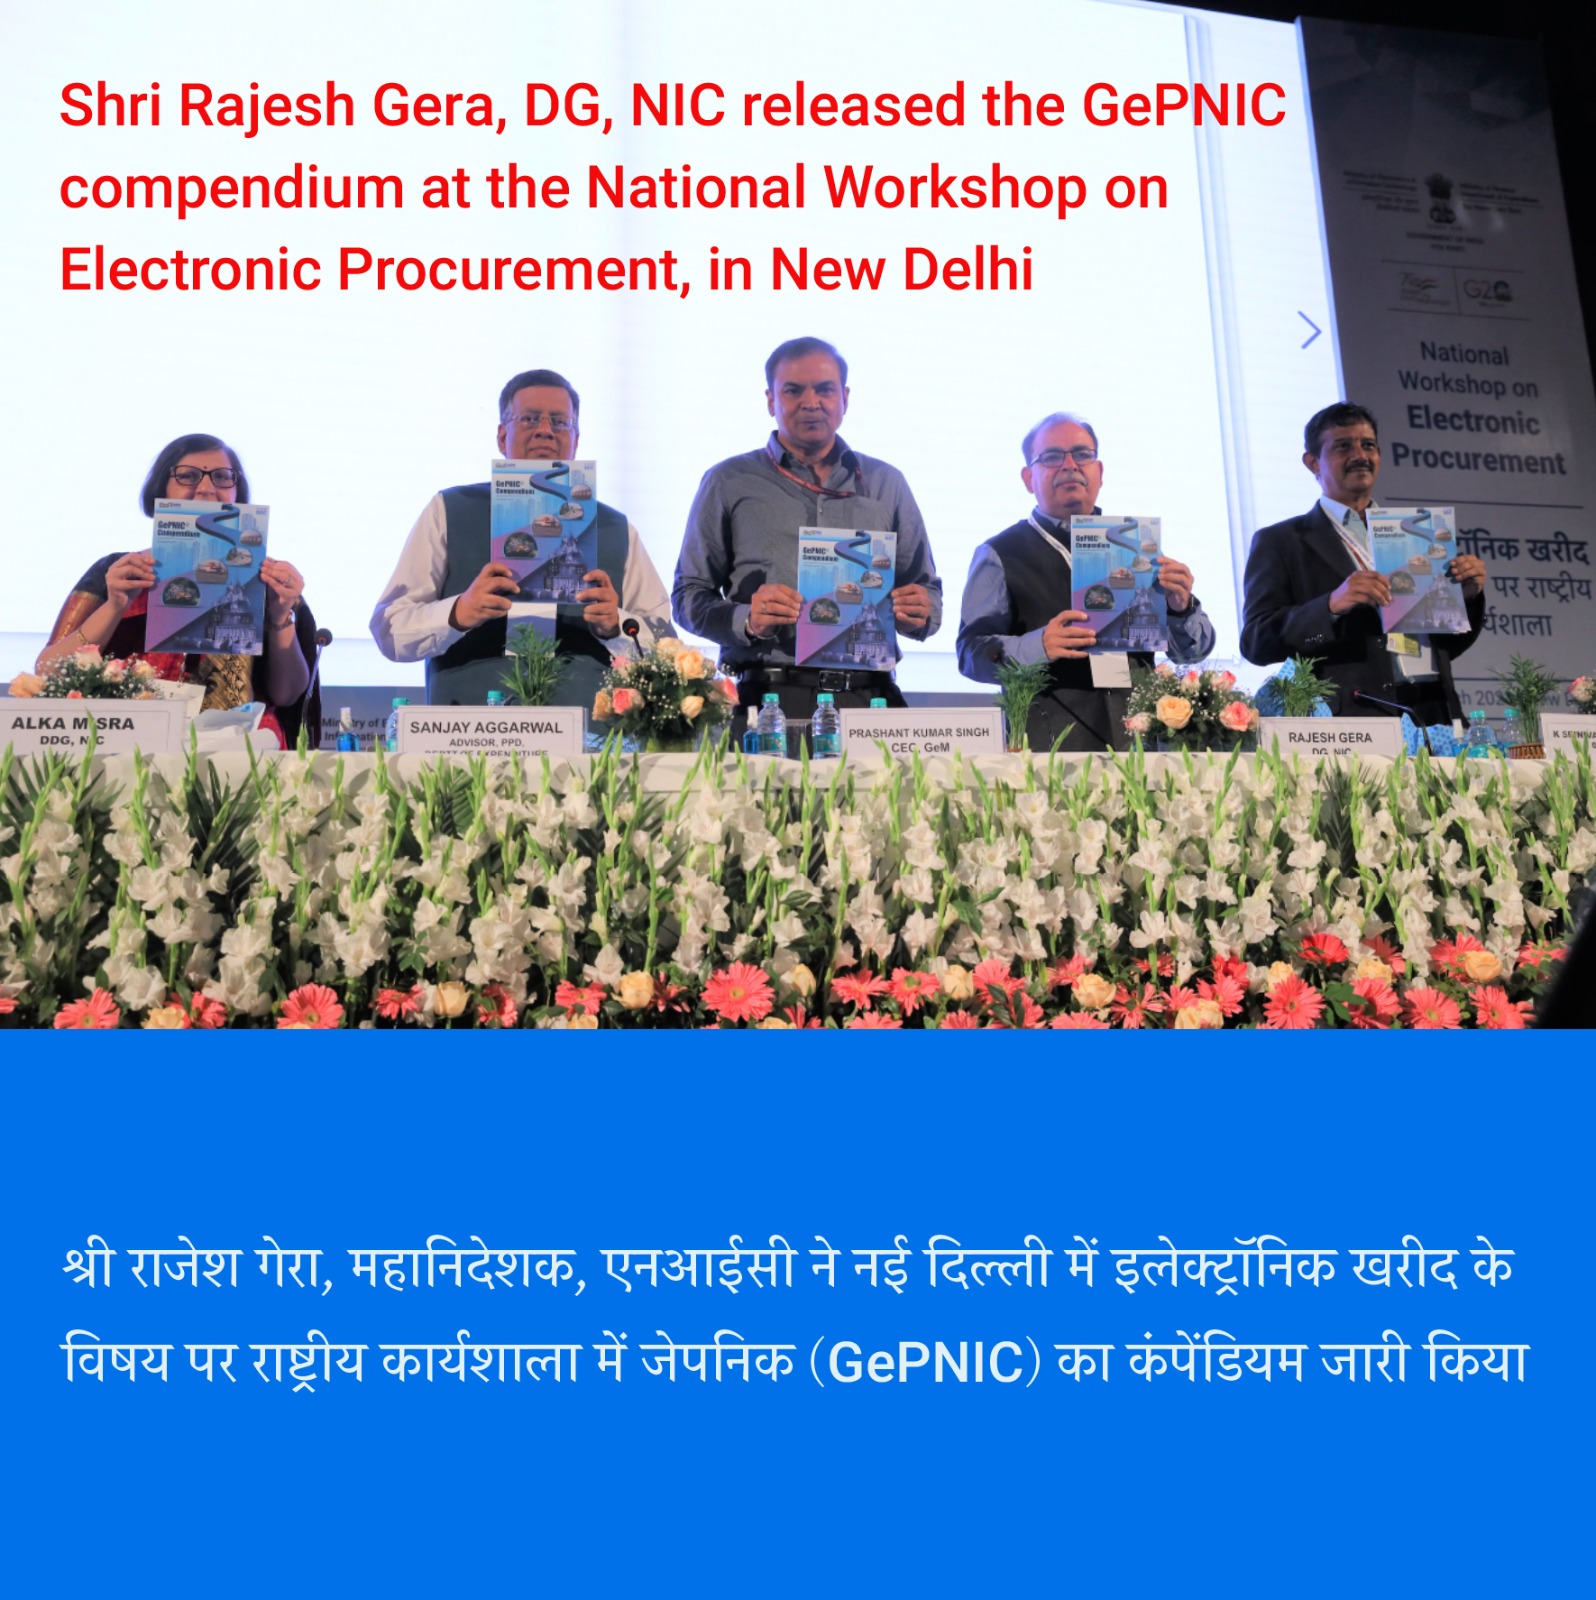 Image of नई दिल्ली में इलेक्ट्रॉनिक खरीद पर राष्ट्रीय कार्यशाला में GePNIC कंपेंडियम का विमोचन।